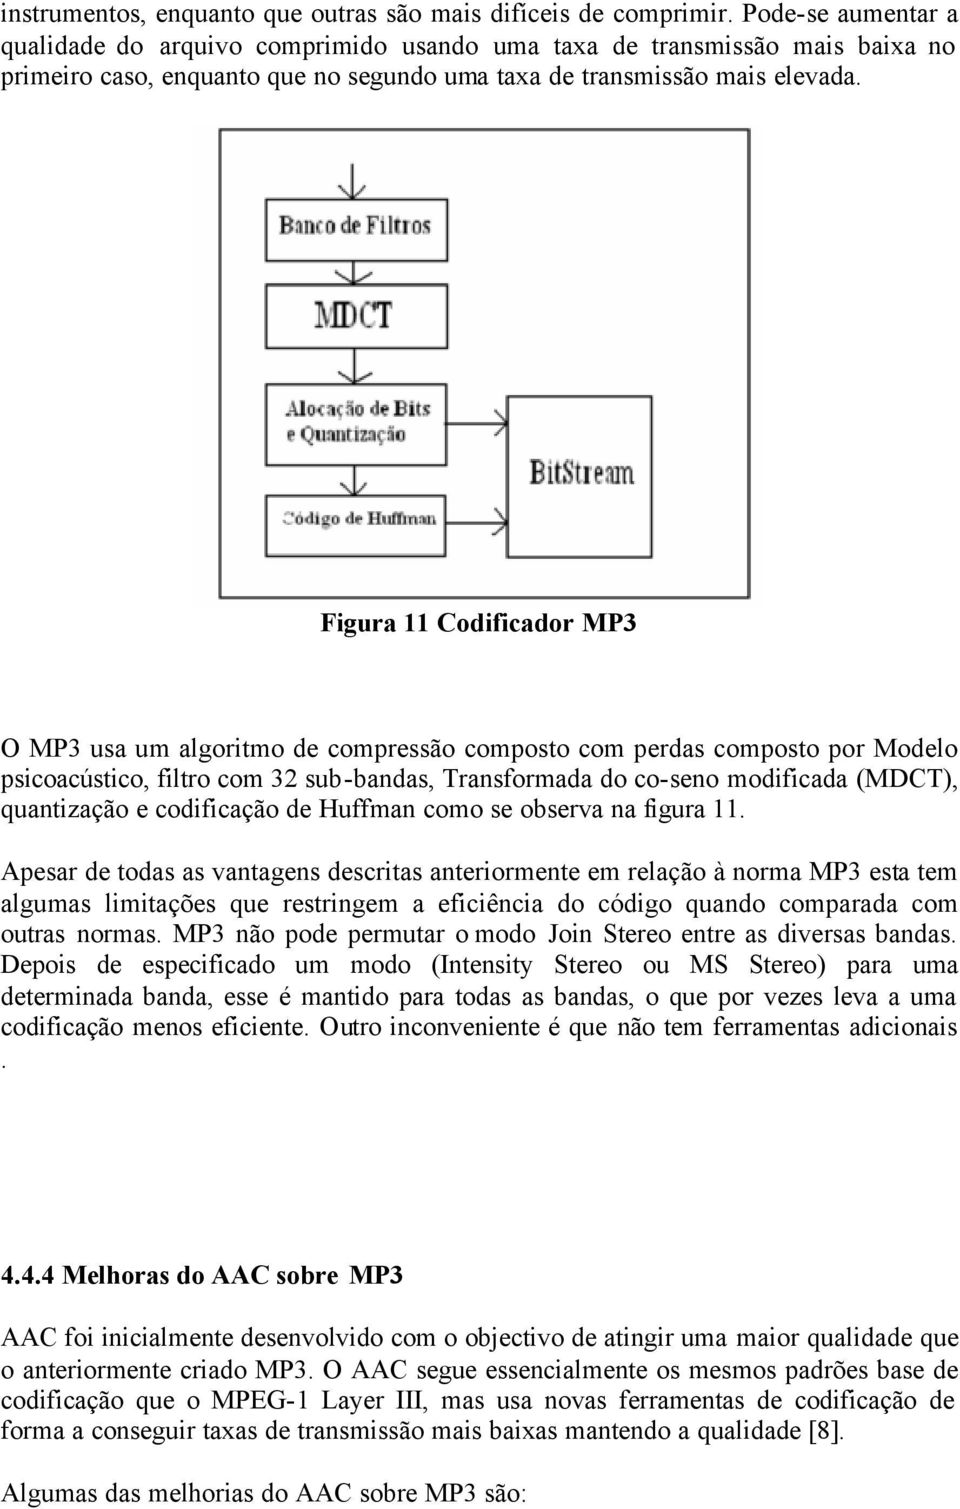 Figura 11 Codificador MP3 O MP3 usa um algoritmo de compressão composto com perdas composto por Modelo psicoacústico, filtro com 32 sub-bandas, Transformada do co-seno modificada (MDCT), quantização